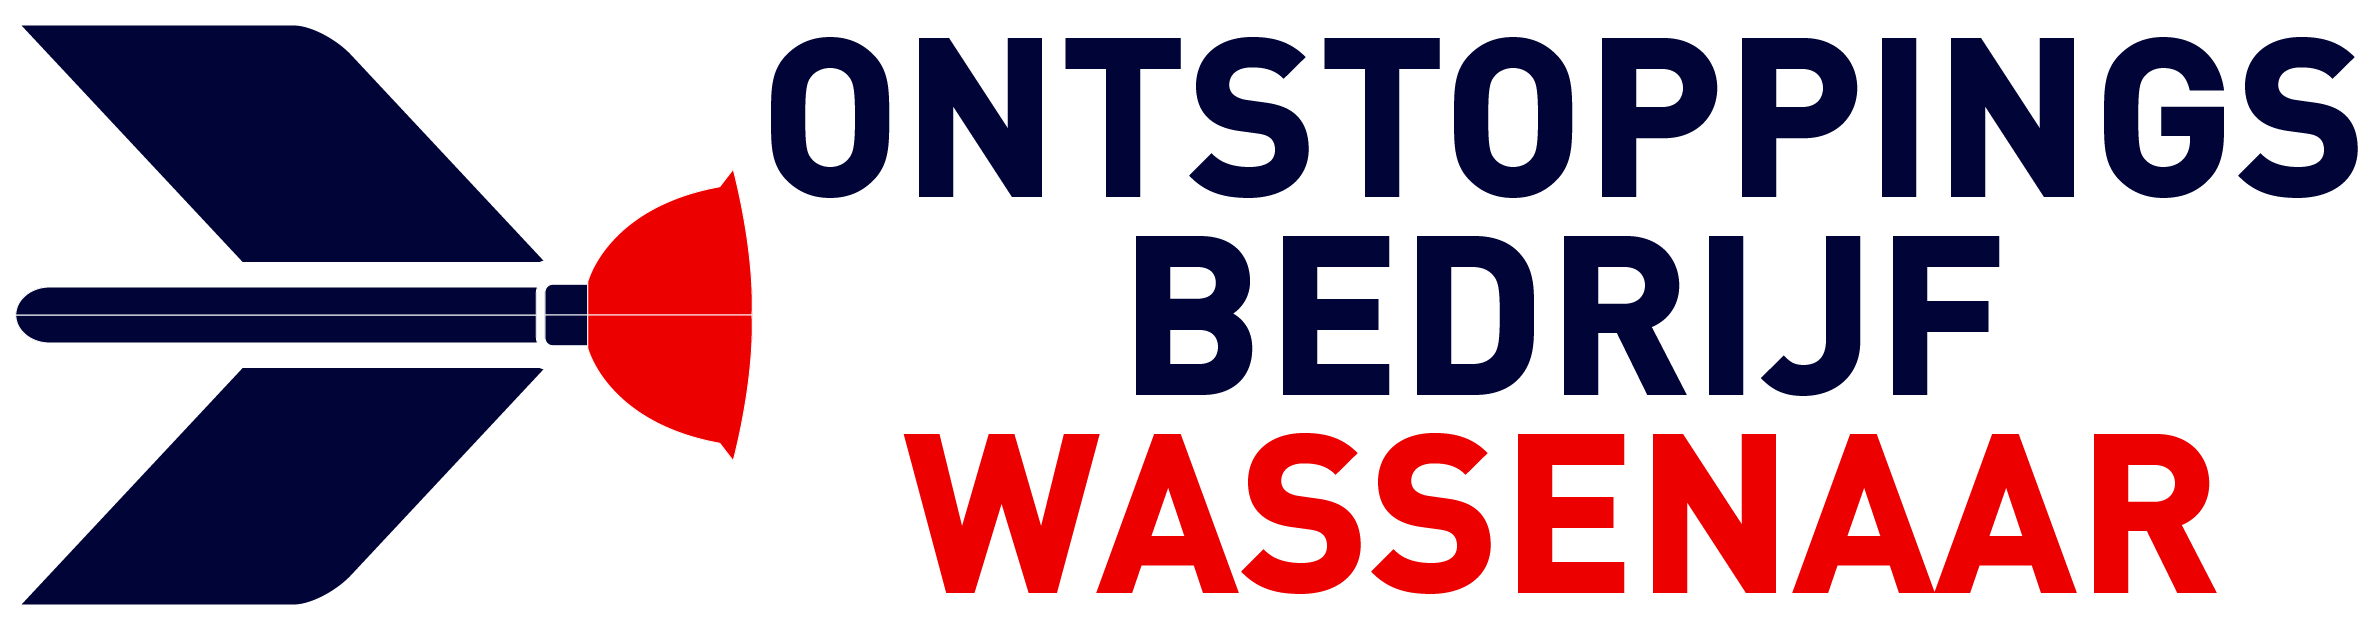 Ontstoppingsbedrijf Wassenaar logo